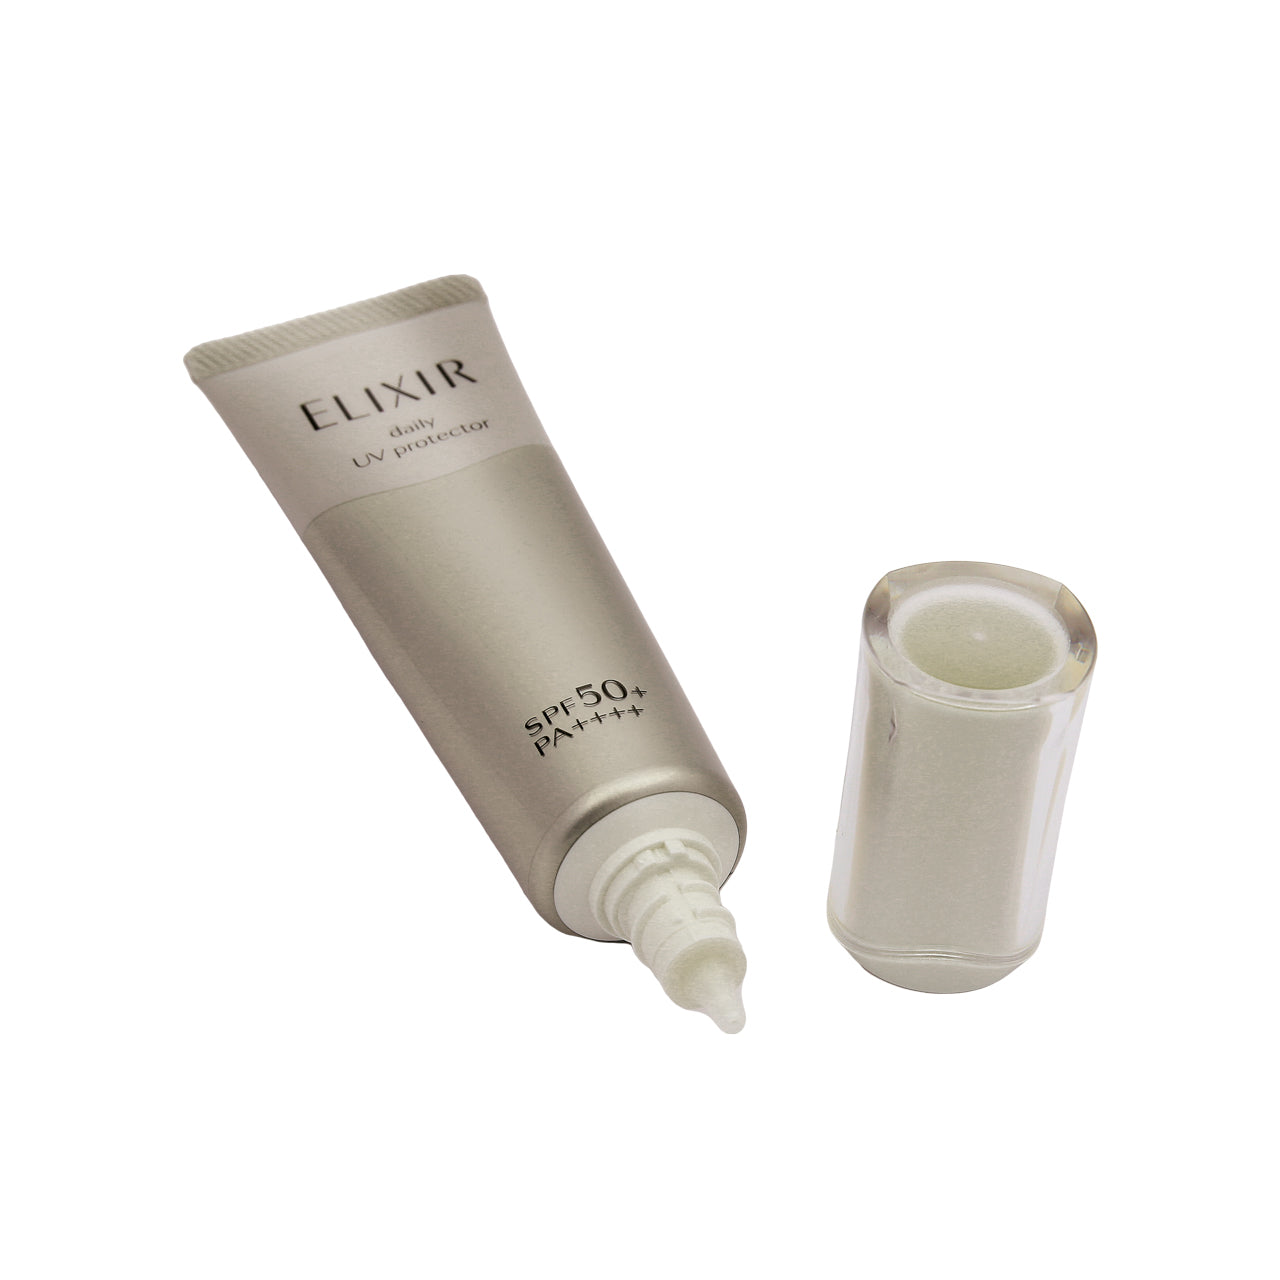 Shiseido Elixir Eis Daily UV Protector SPF50+ PA++++ 35ml | Sasa Global eShop